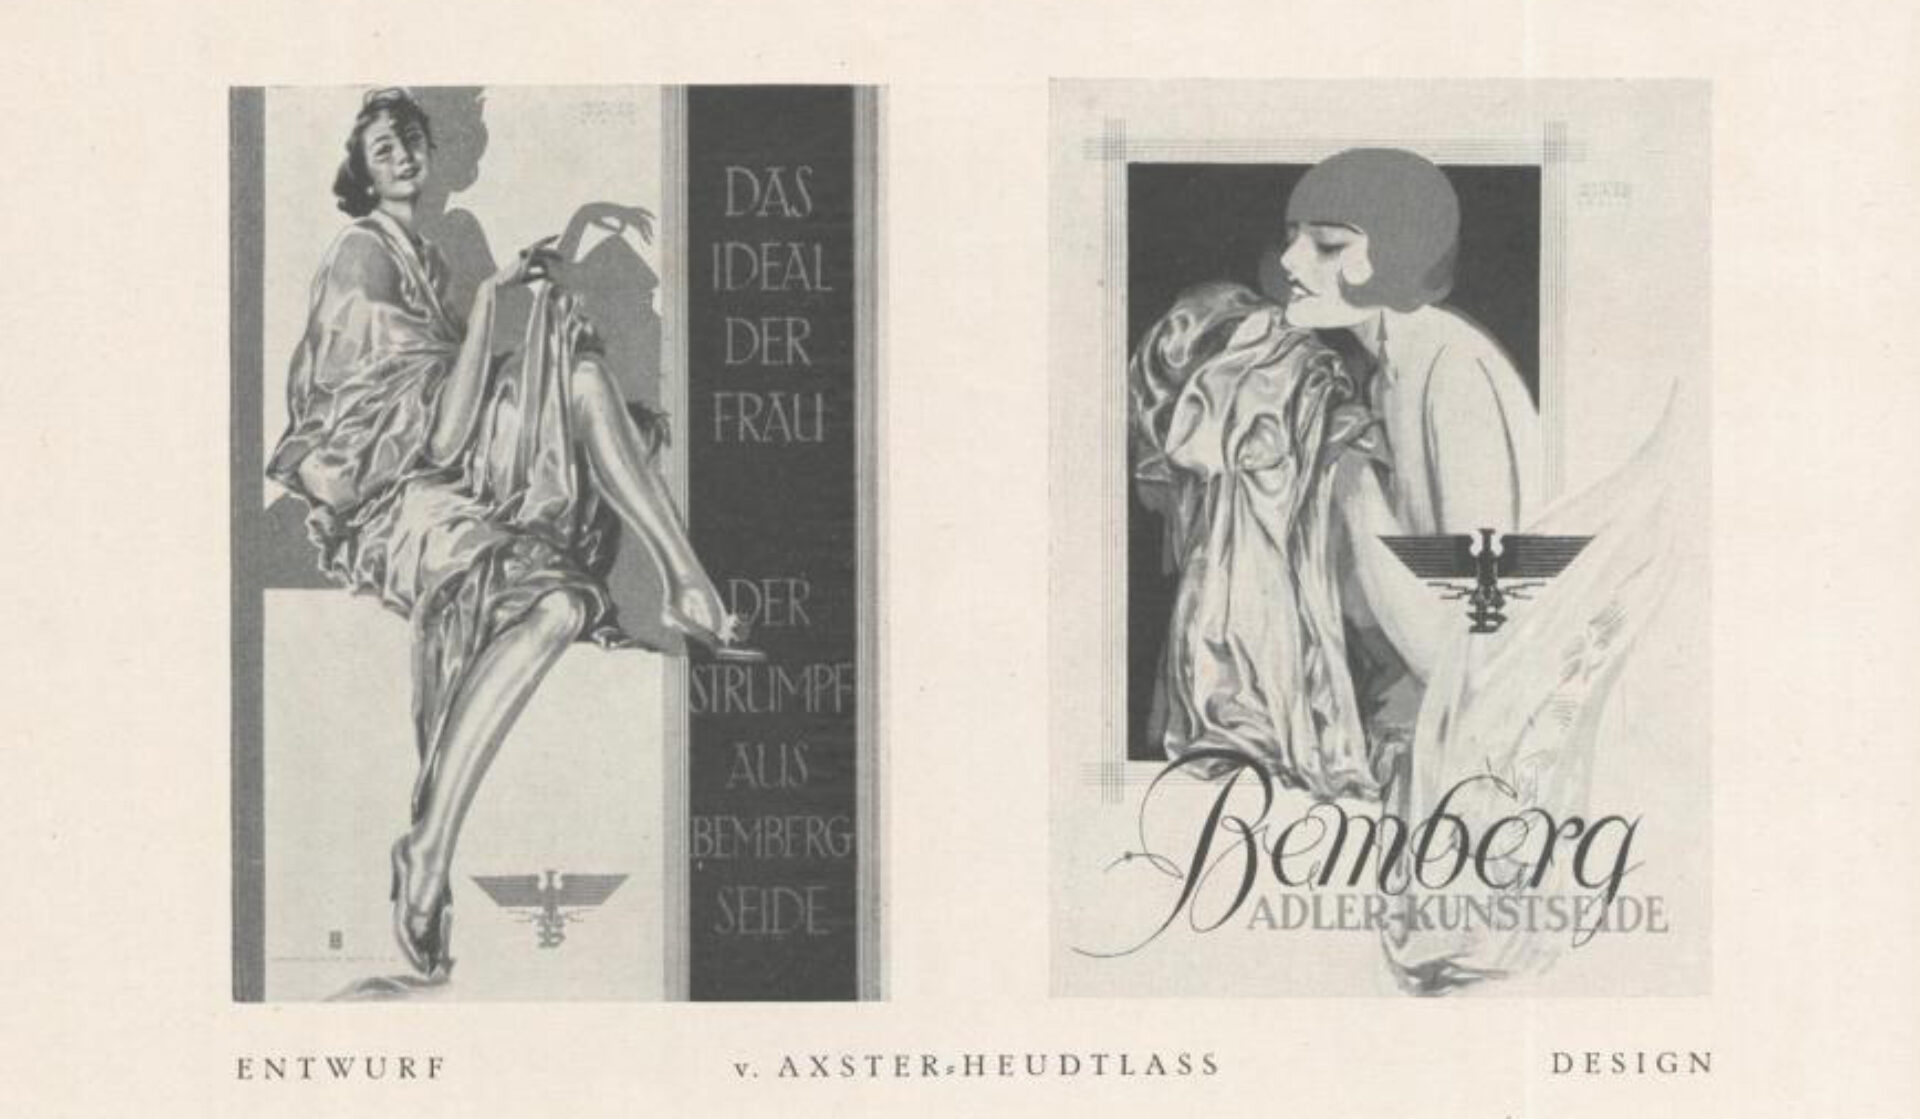 Entwürfe für Bemberg Seide, in Gebrauchsgraphik, Heft 11, 1927, S 62